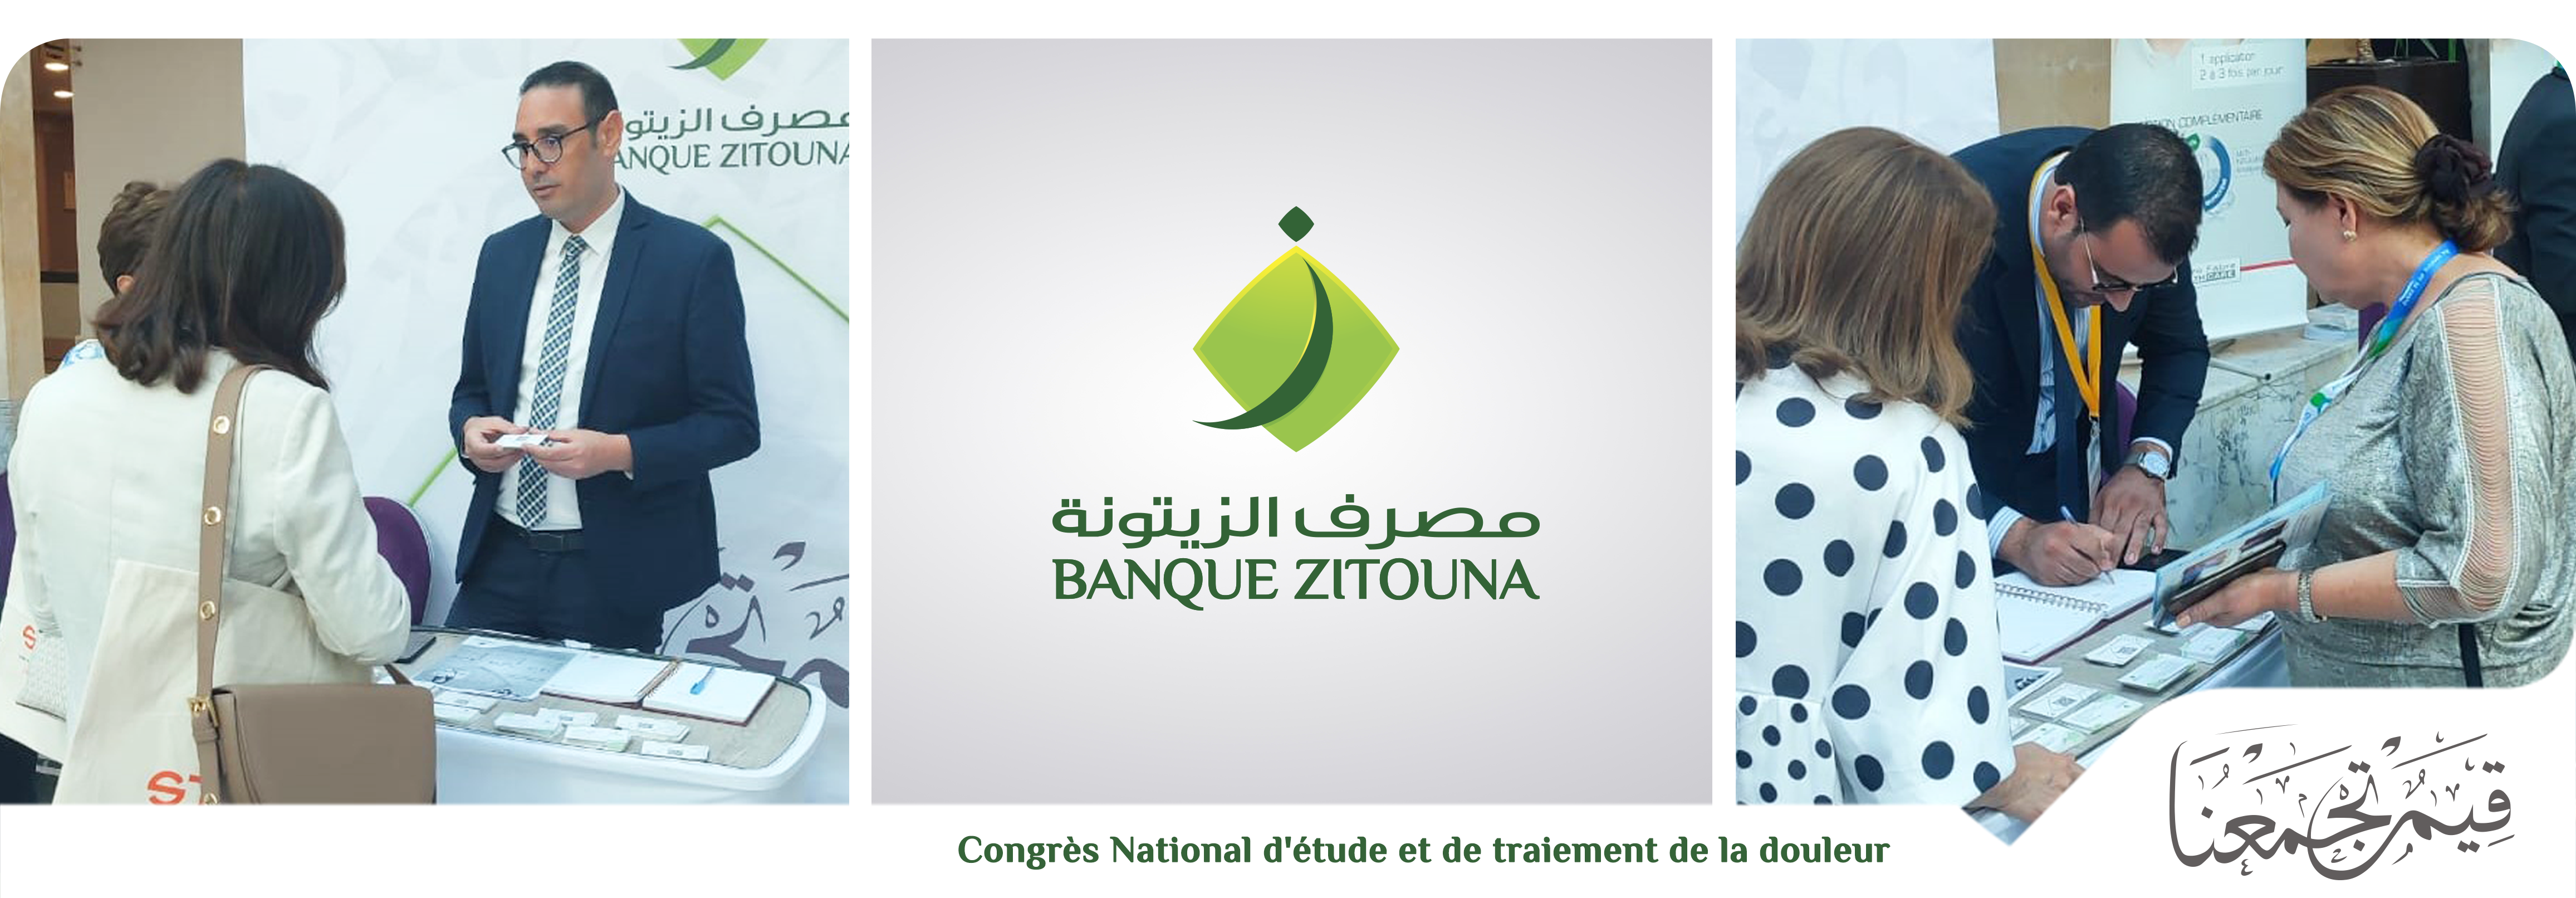 Banque Zitouna Sponsor du Congrès National d'étude et de traitement de la douleur